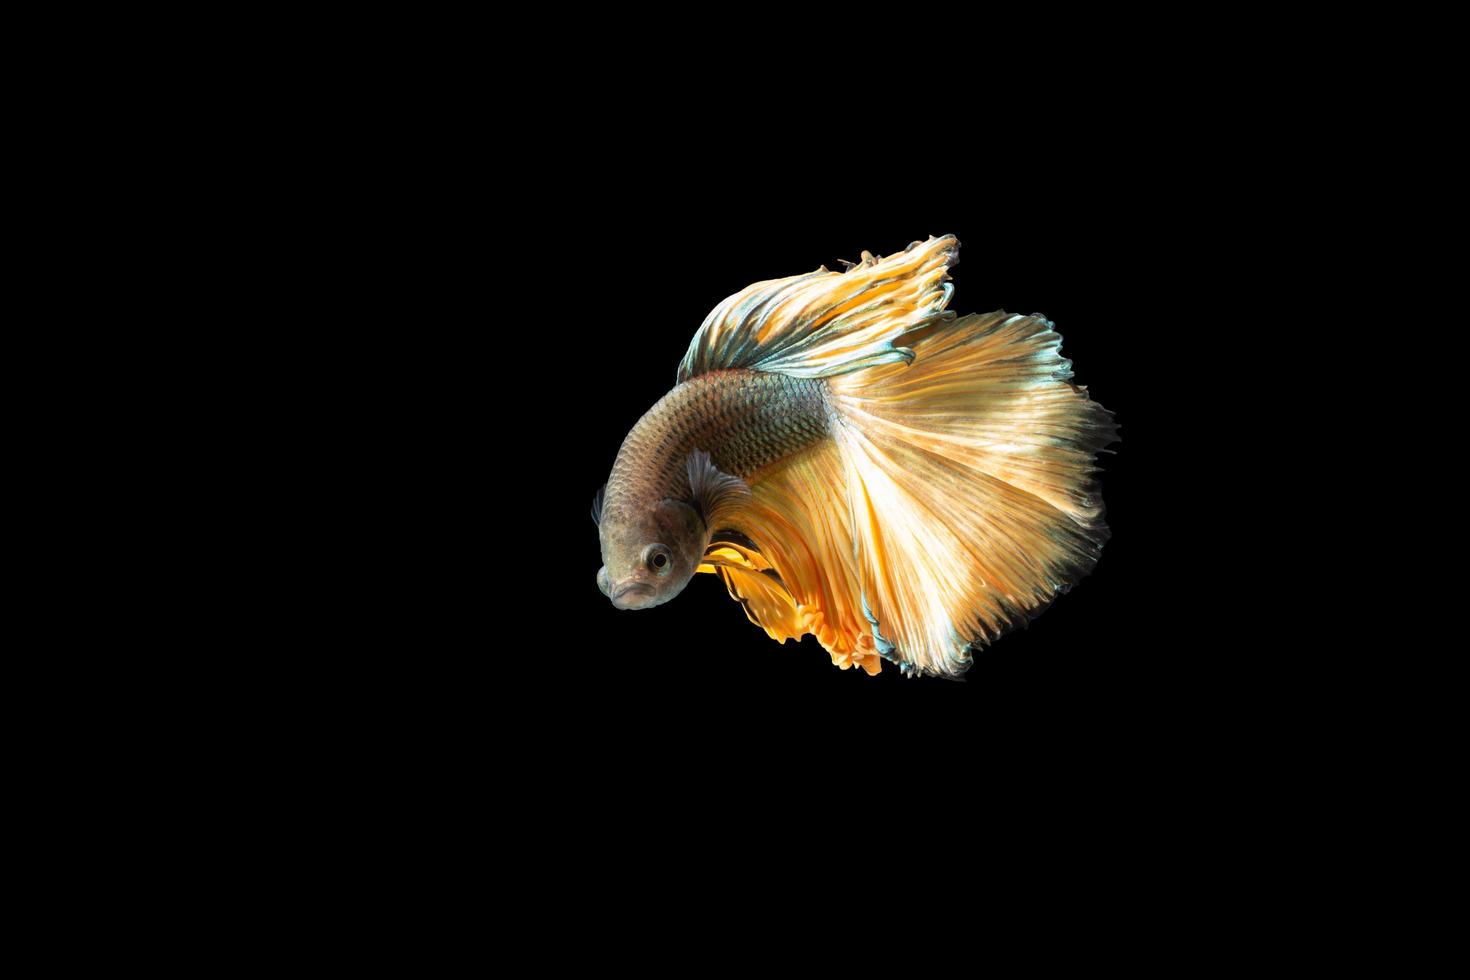 Halfmoon betta fish on black background photo